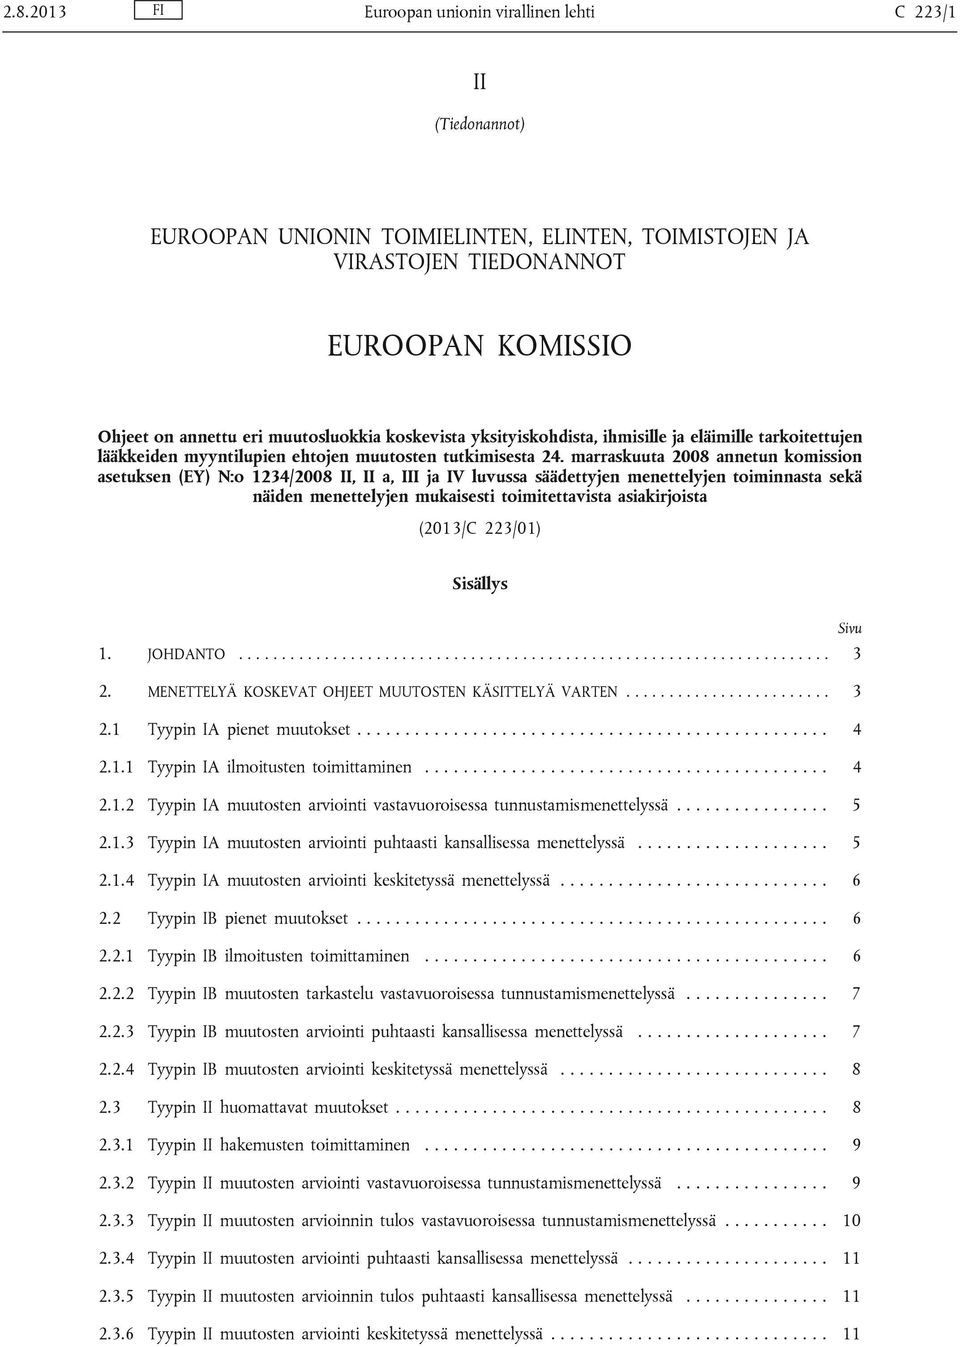 marraskuuta 2008 annetun komission asetuksen (EY) N:o 1234/2008, a, I ja IV luvussa säädettyjen menettelyjen toiminnasta sekä näiden menettelyjen mukaisesti toimitettavista asiakirjoista (2013/C